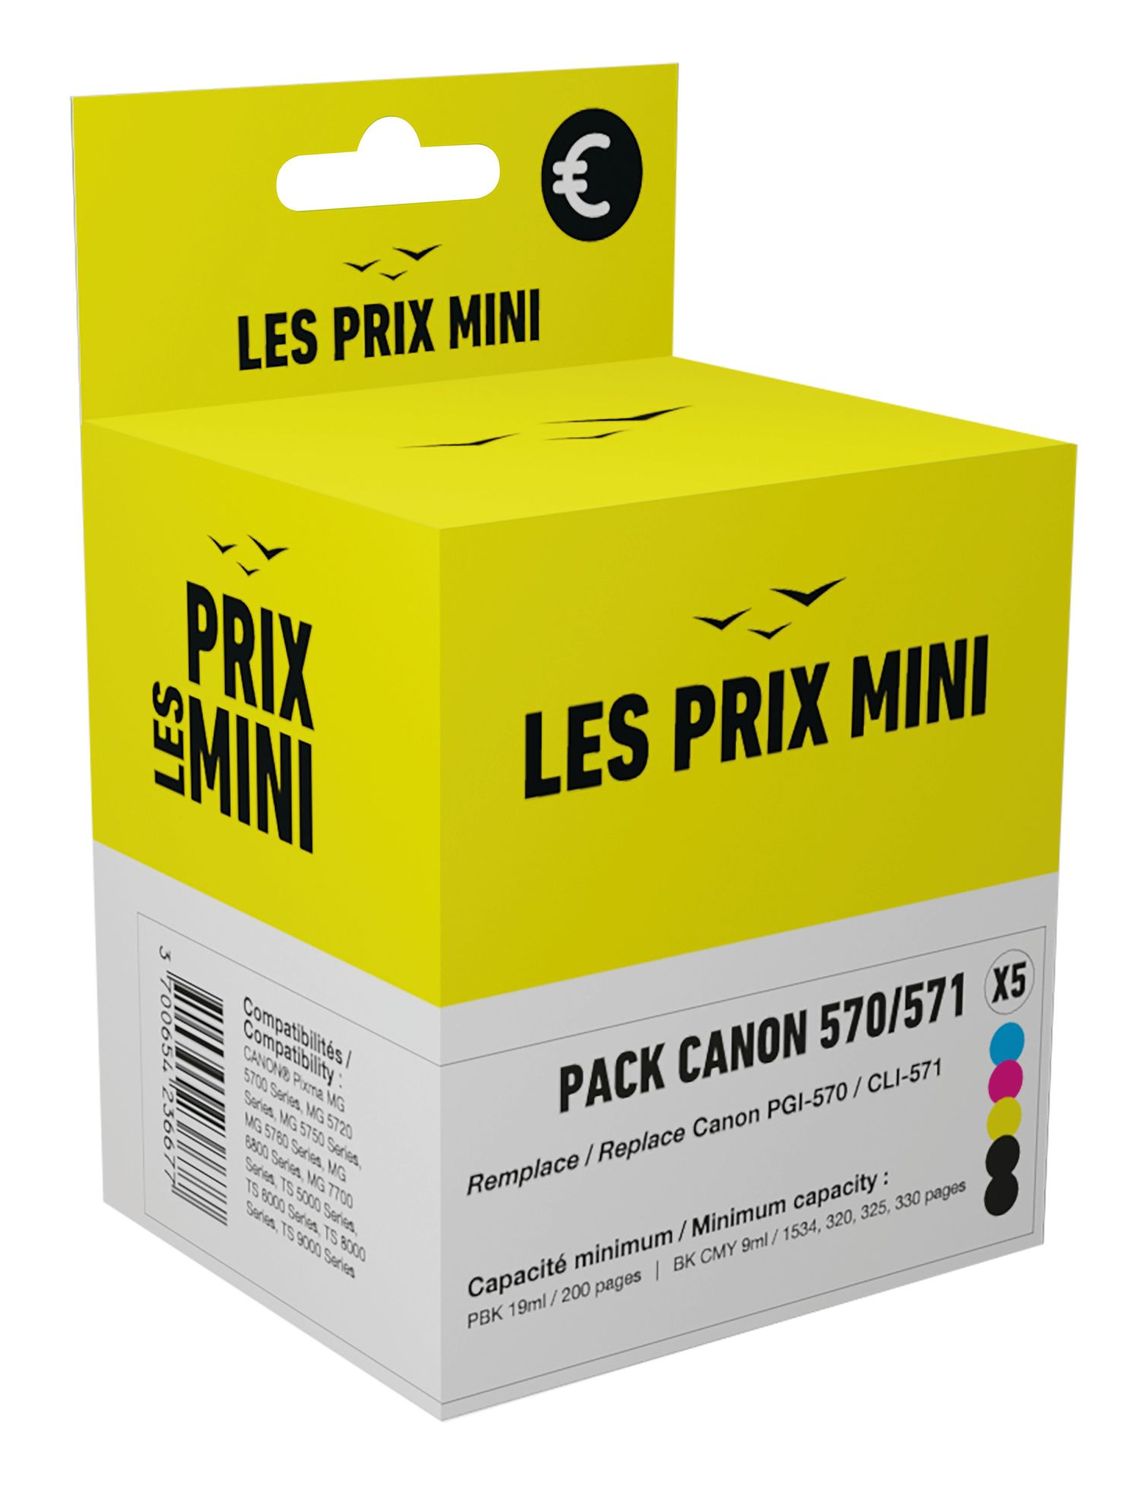 Cartouche compatible Canon CLI-571/PGI-570 - Pack de 5 - noir x2, cyan,  magenta, jaune - prix mini Pas Cher